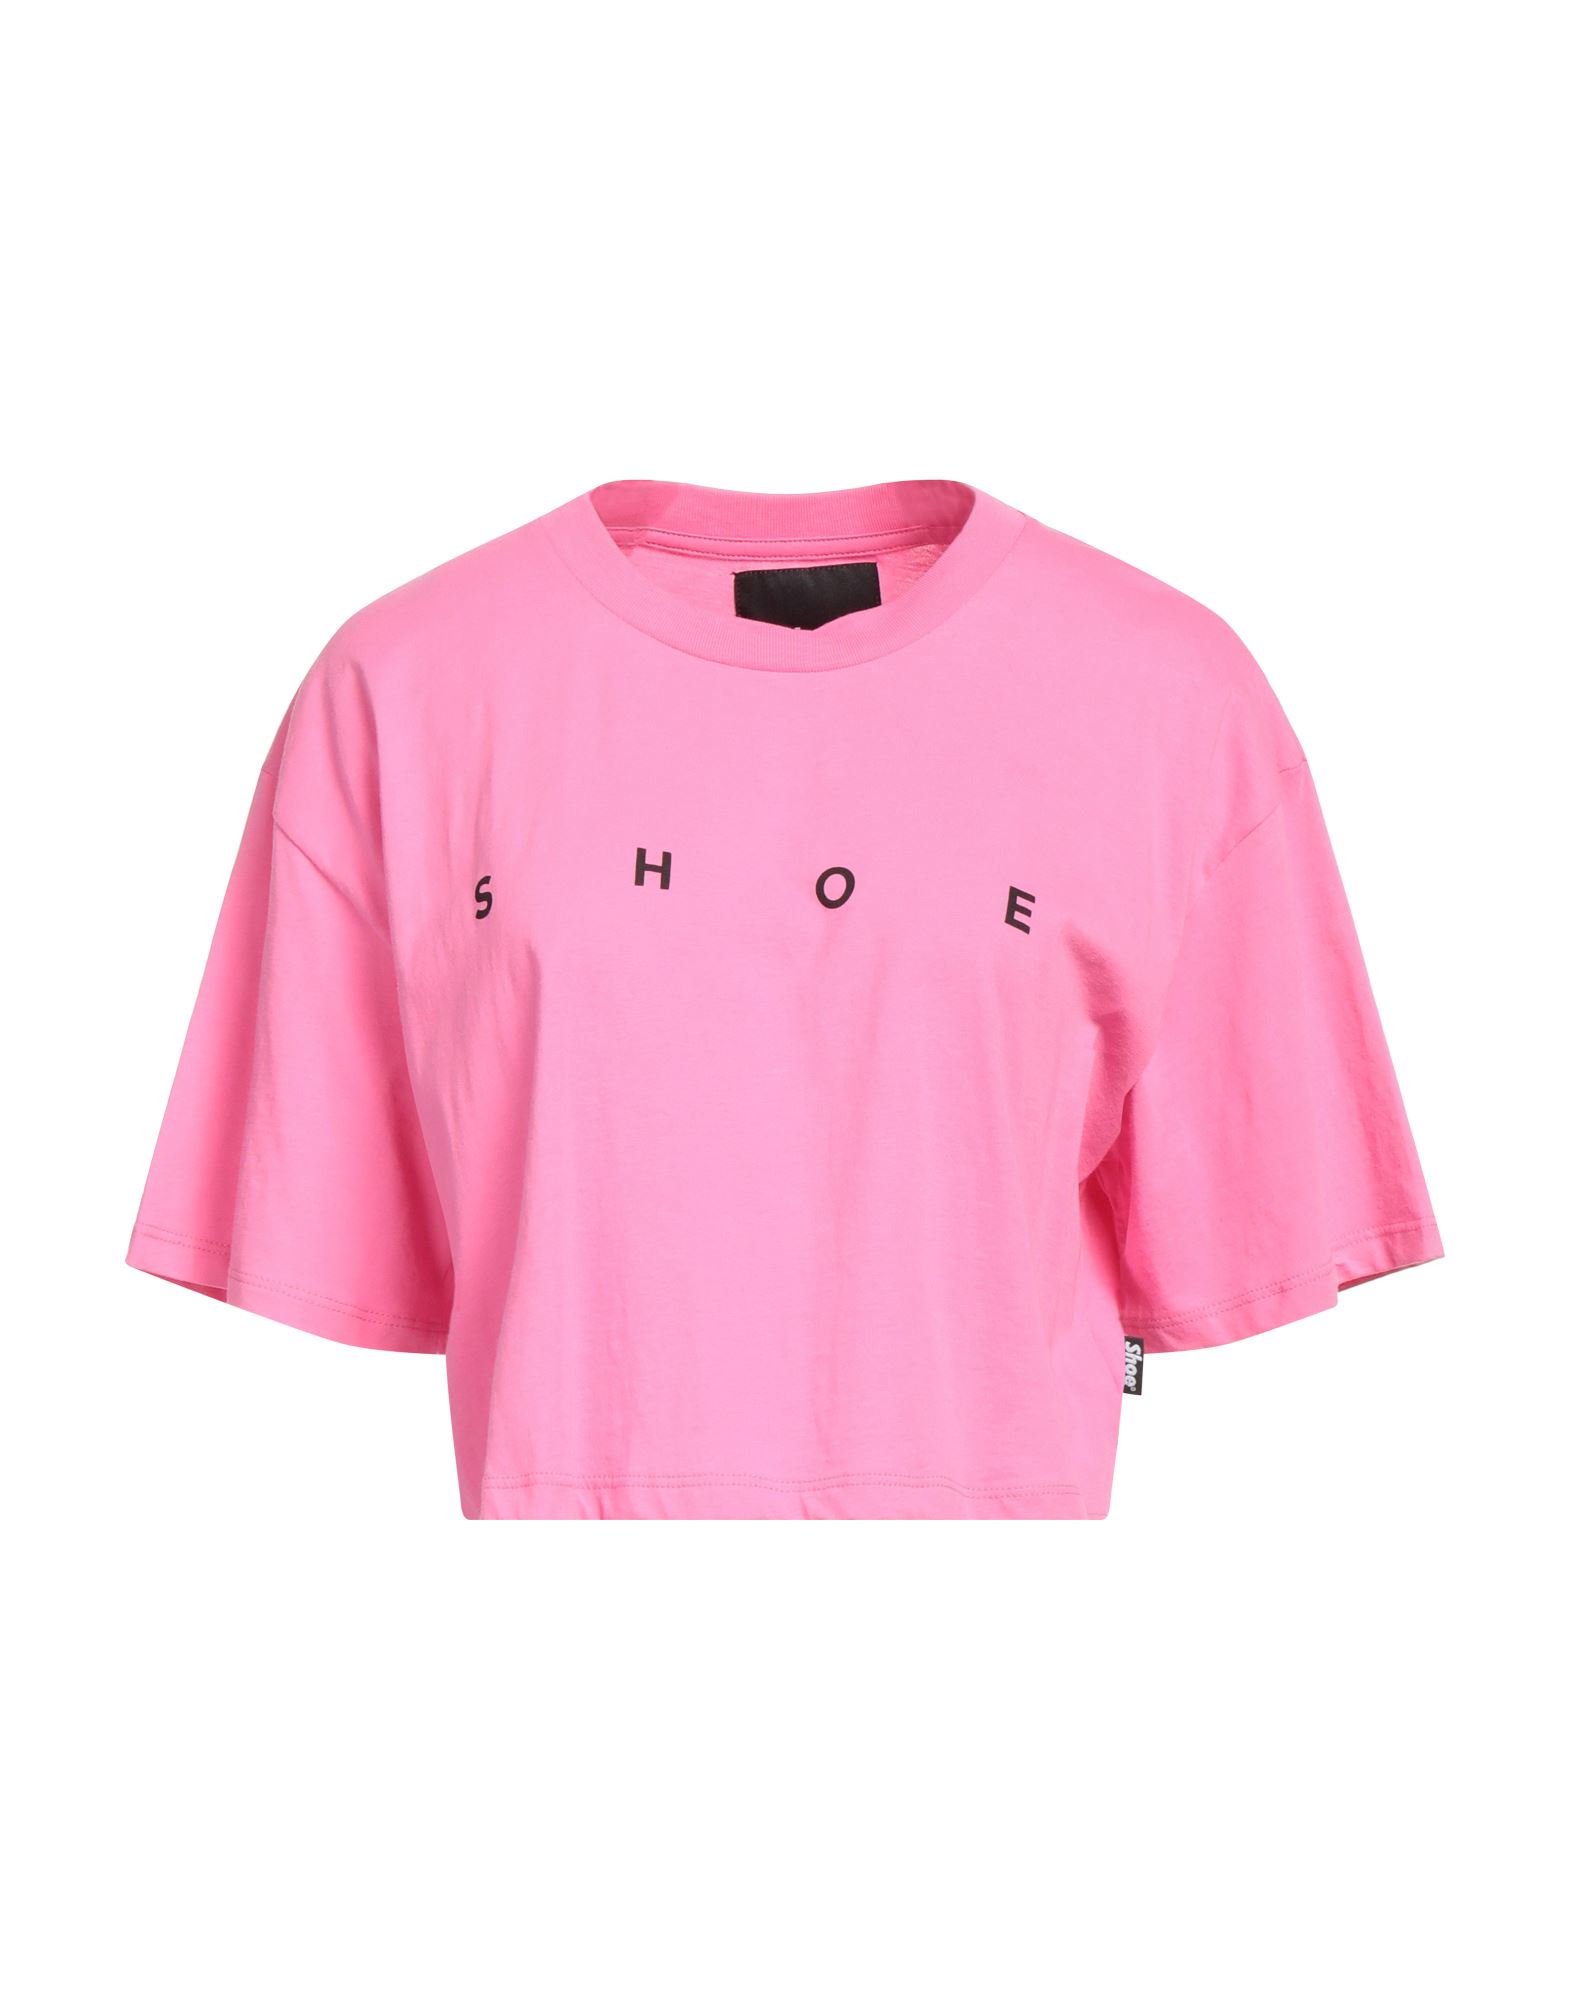 Shoe® Shoe Woman T-shirt Fuchsia Size S Cotton In Pink